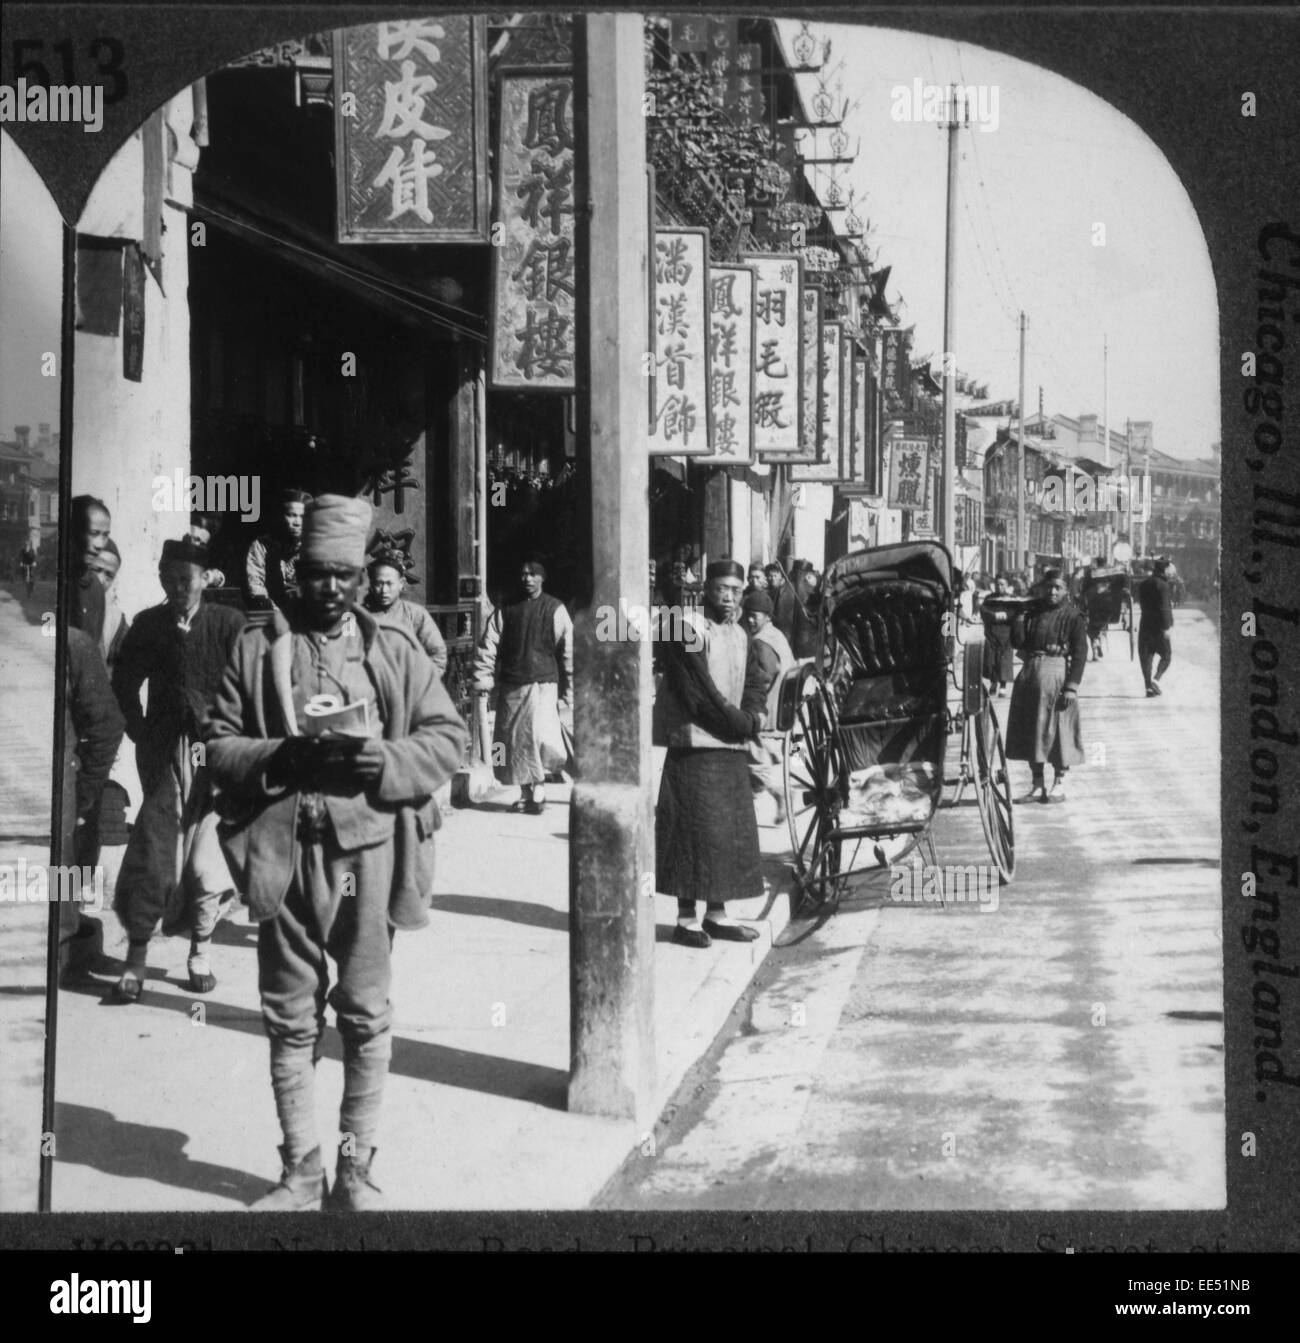 Scène de rue, Nankin Road, Shanghai, Chine, vers 1900 Banque D'Images